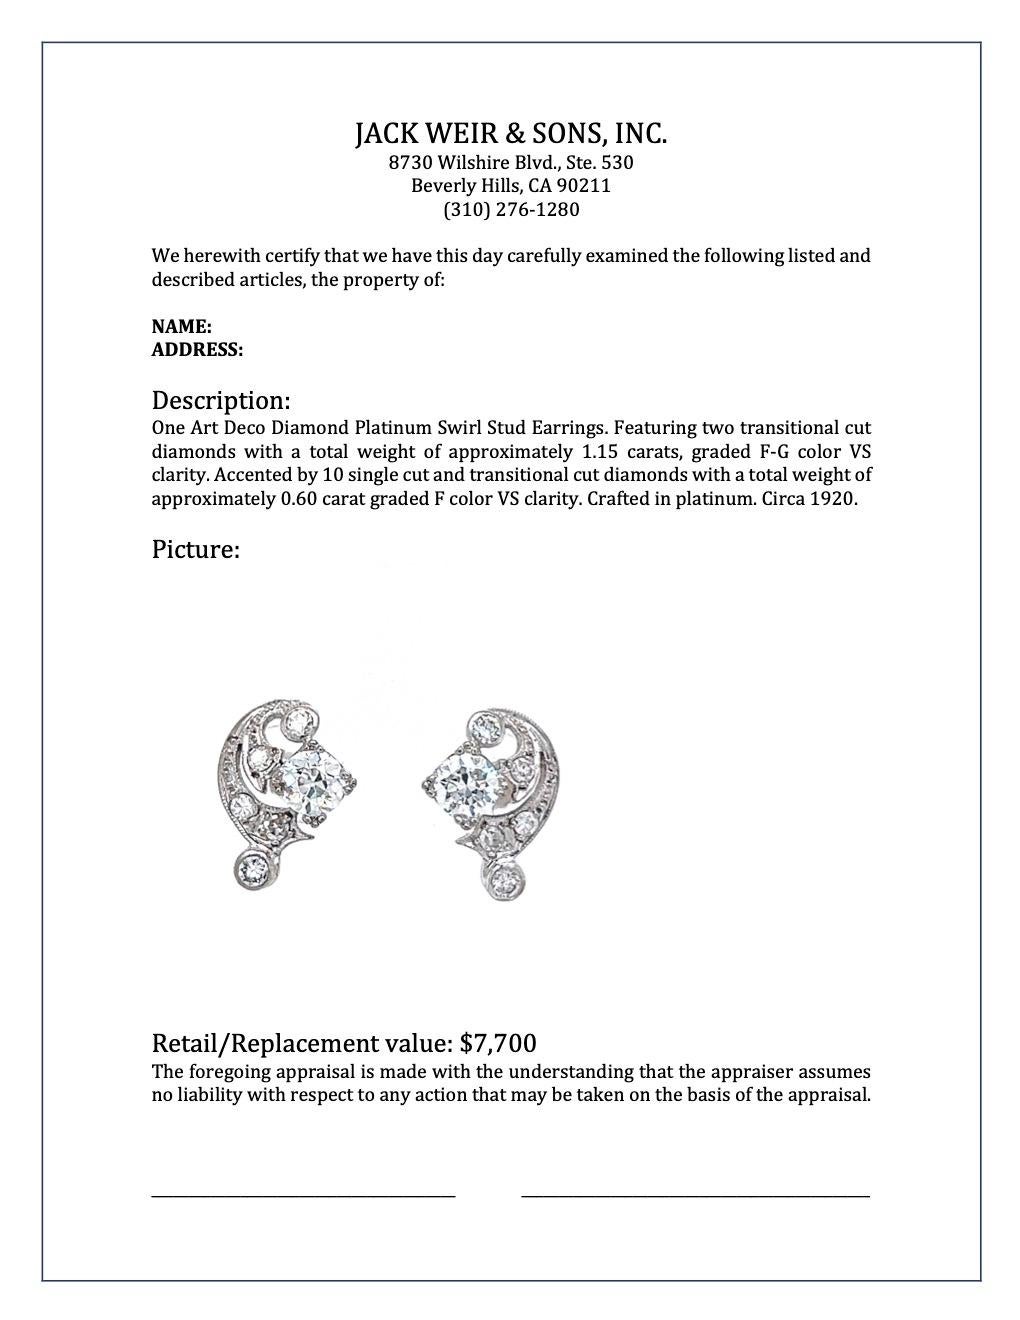 Art Deco Diamond Platinum Swirl Stud Earrings 1